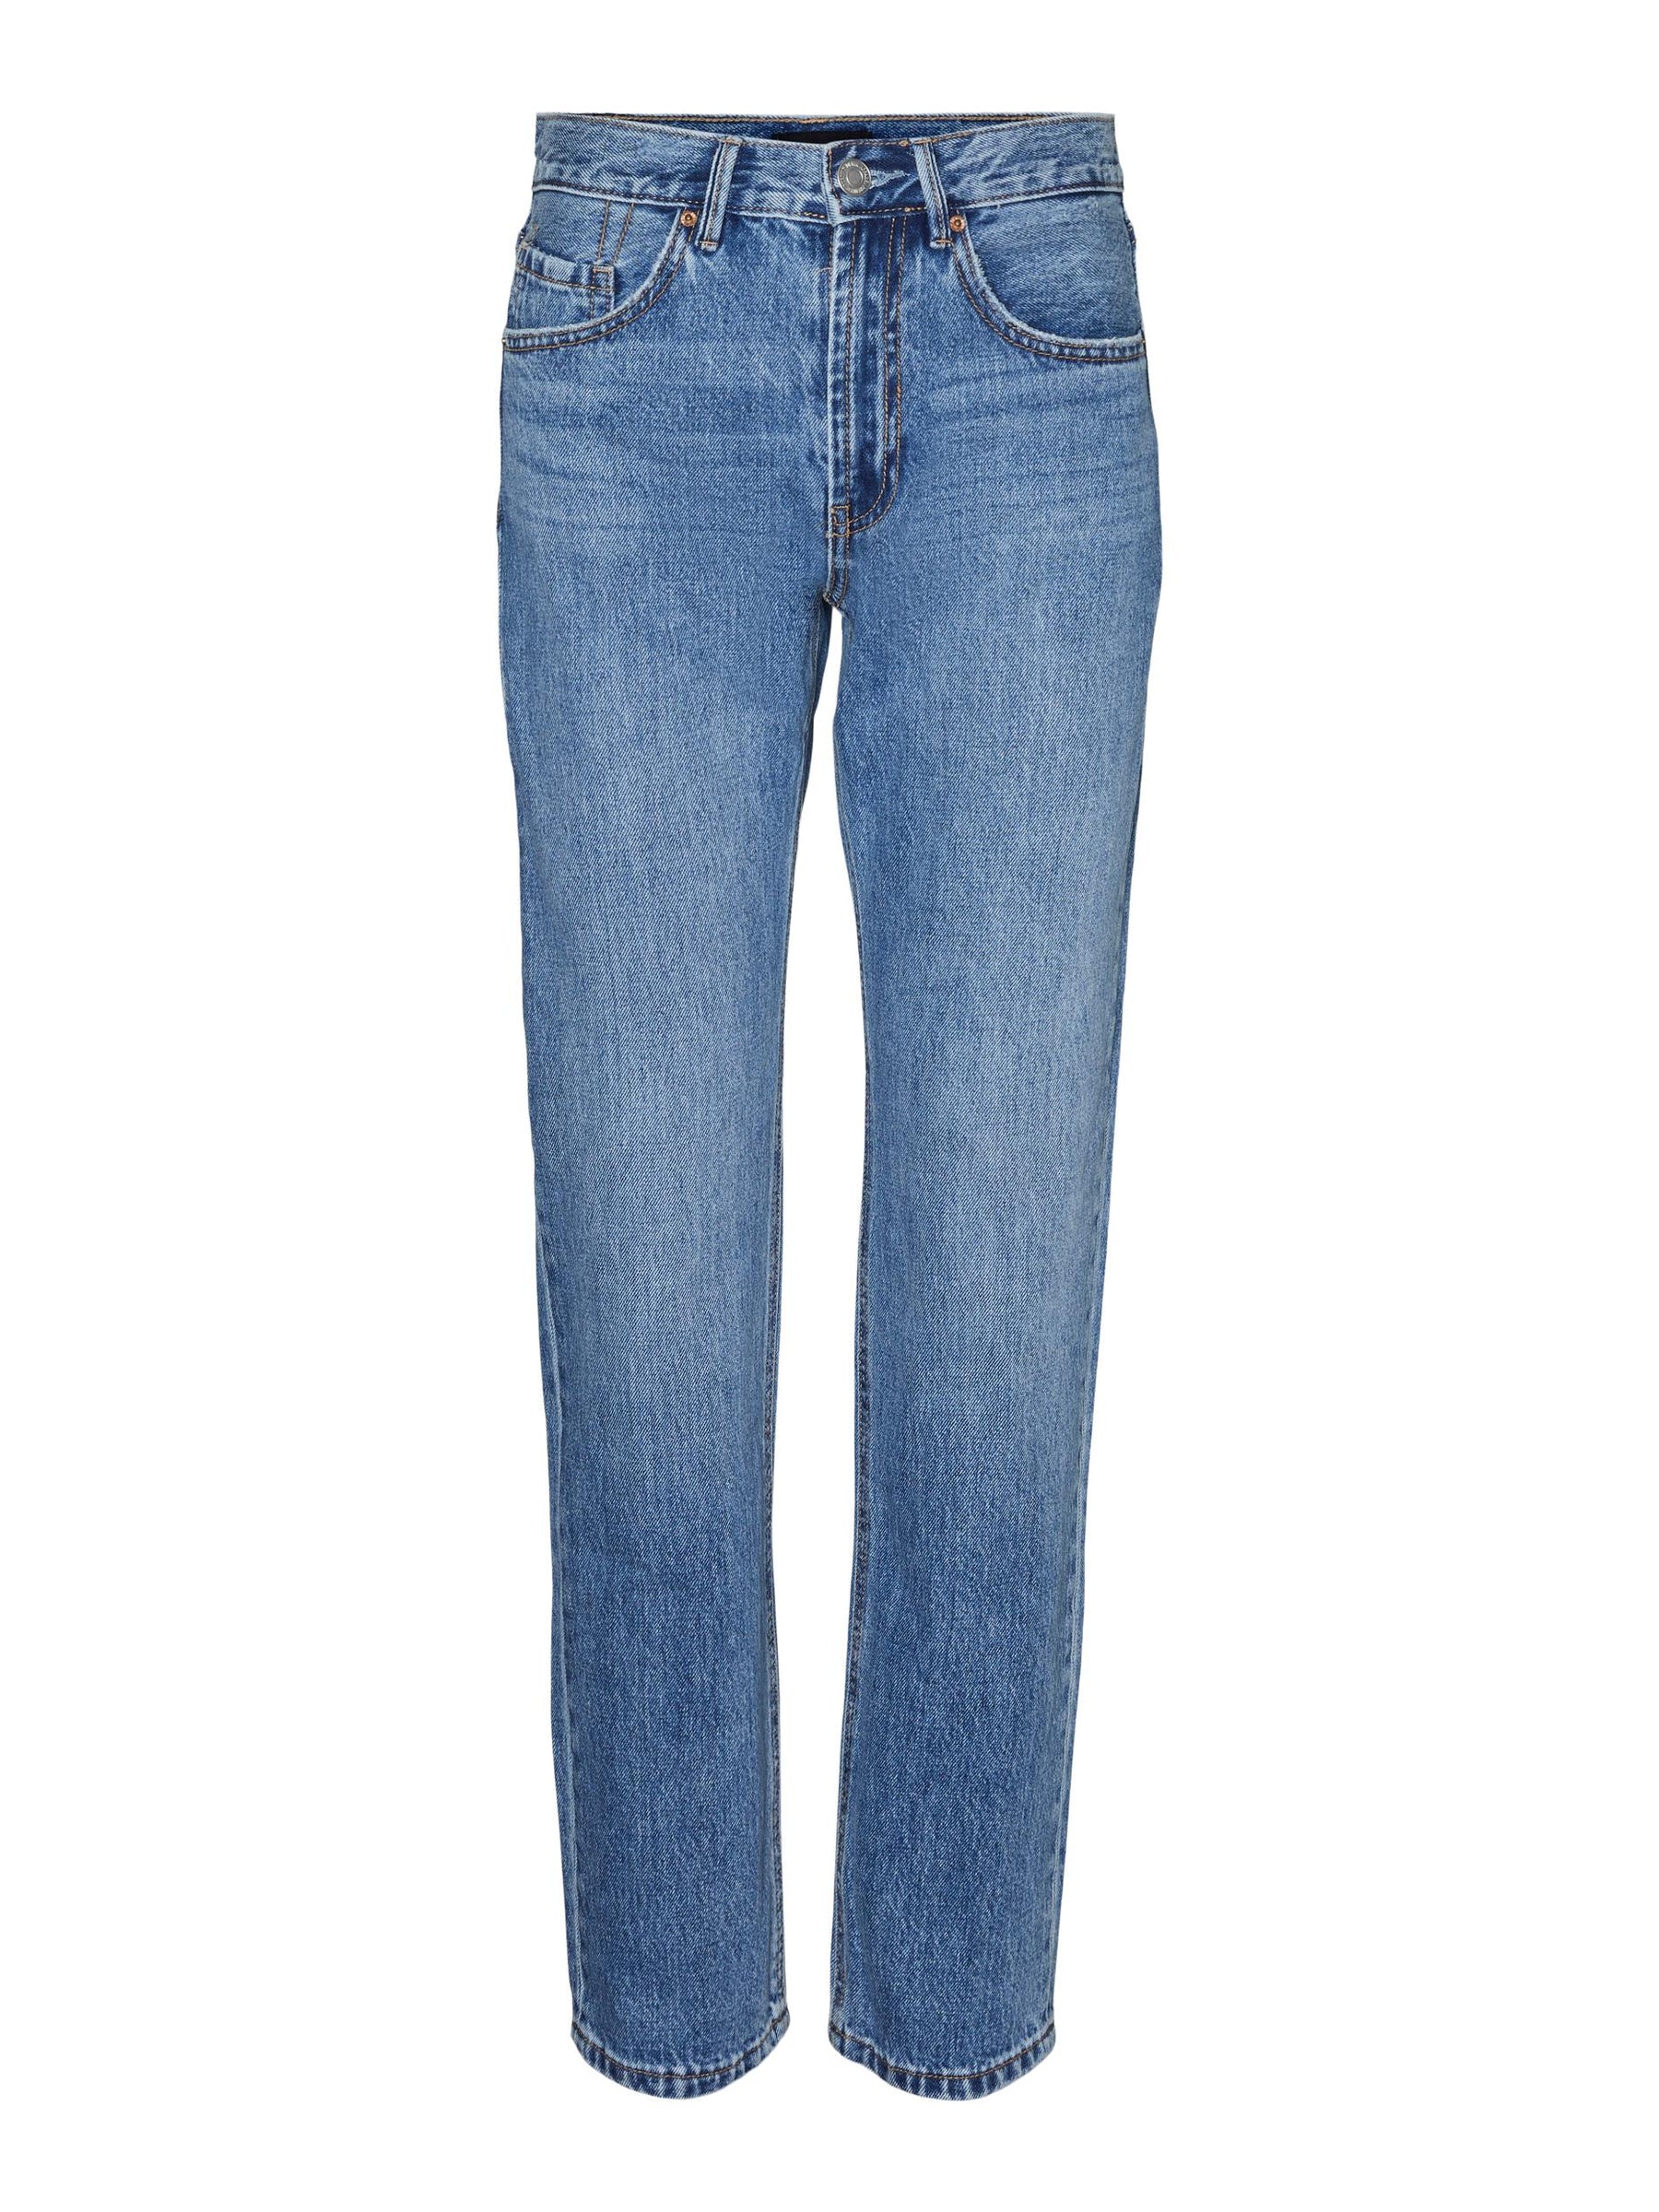 ג'ינס קלאסי בגזרה ישרה /אורך ארוך במיוחד- Vero Moda |וורו מודה